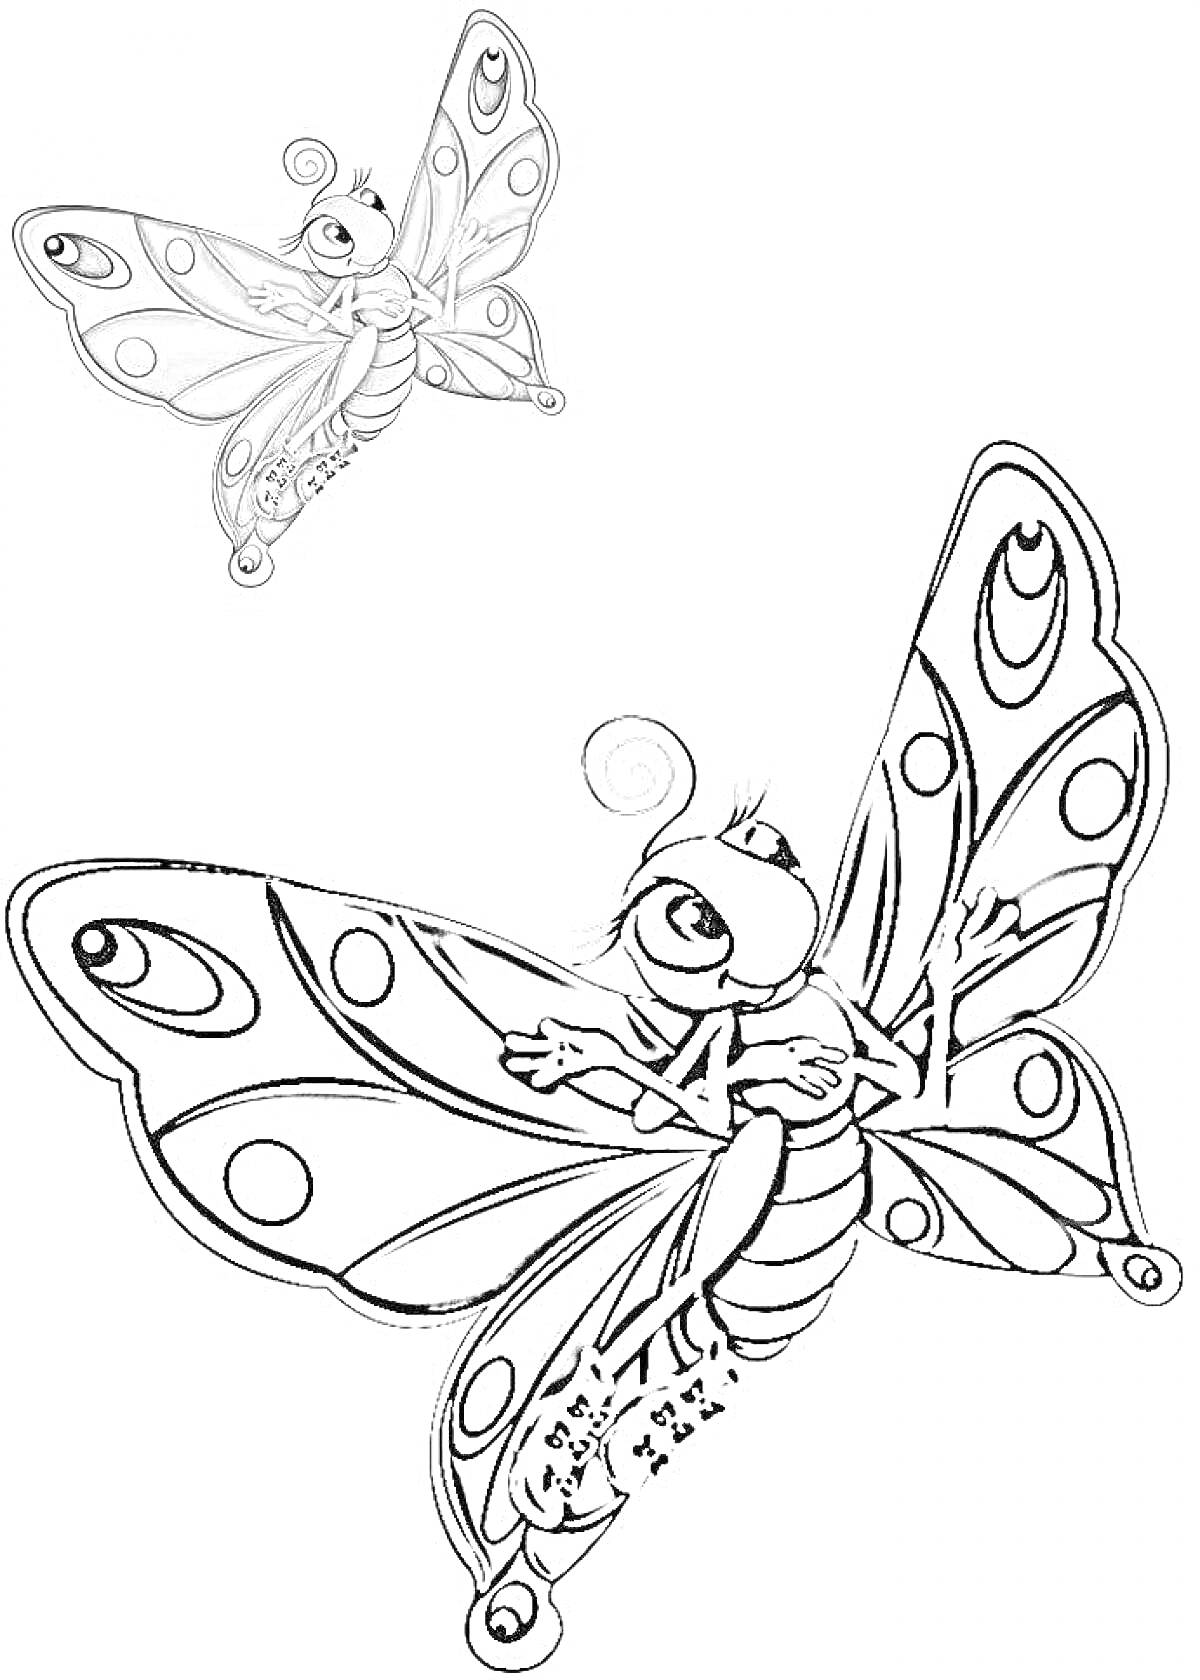 Раскраска Бабочка с цветным образцом в левом верхнем углу и черно-белым контуром для раскрашивания